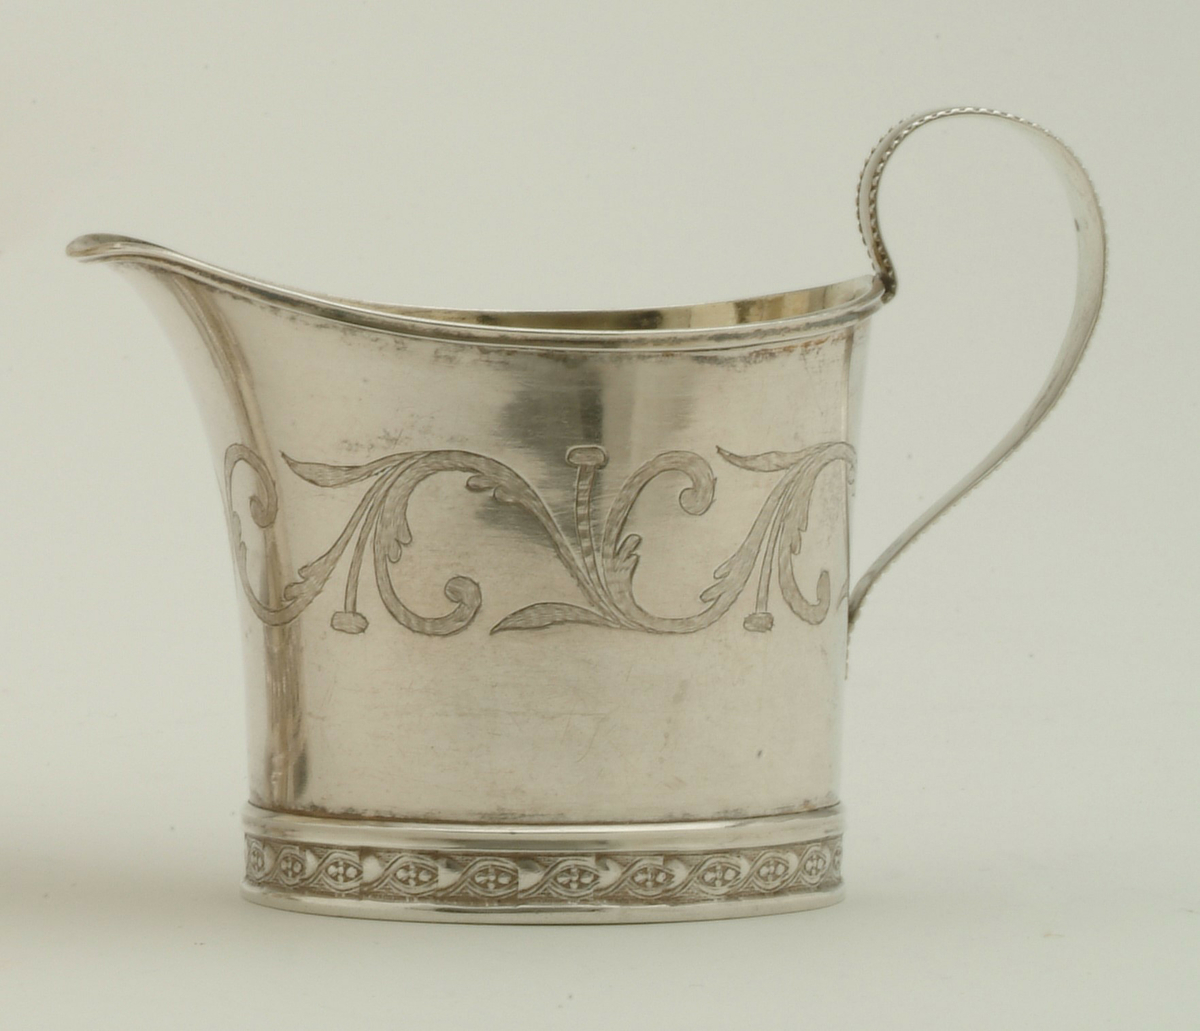 Gräddkanna i silver, tillverkad av Olof Wallin, Gävle 1815.